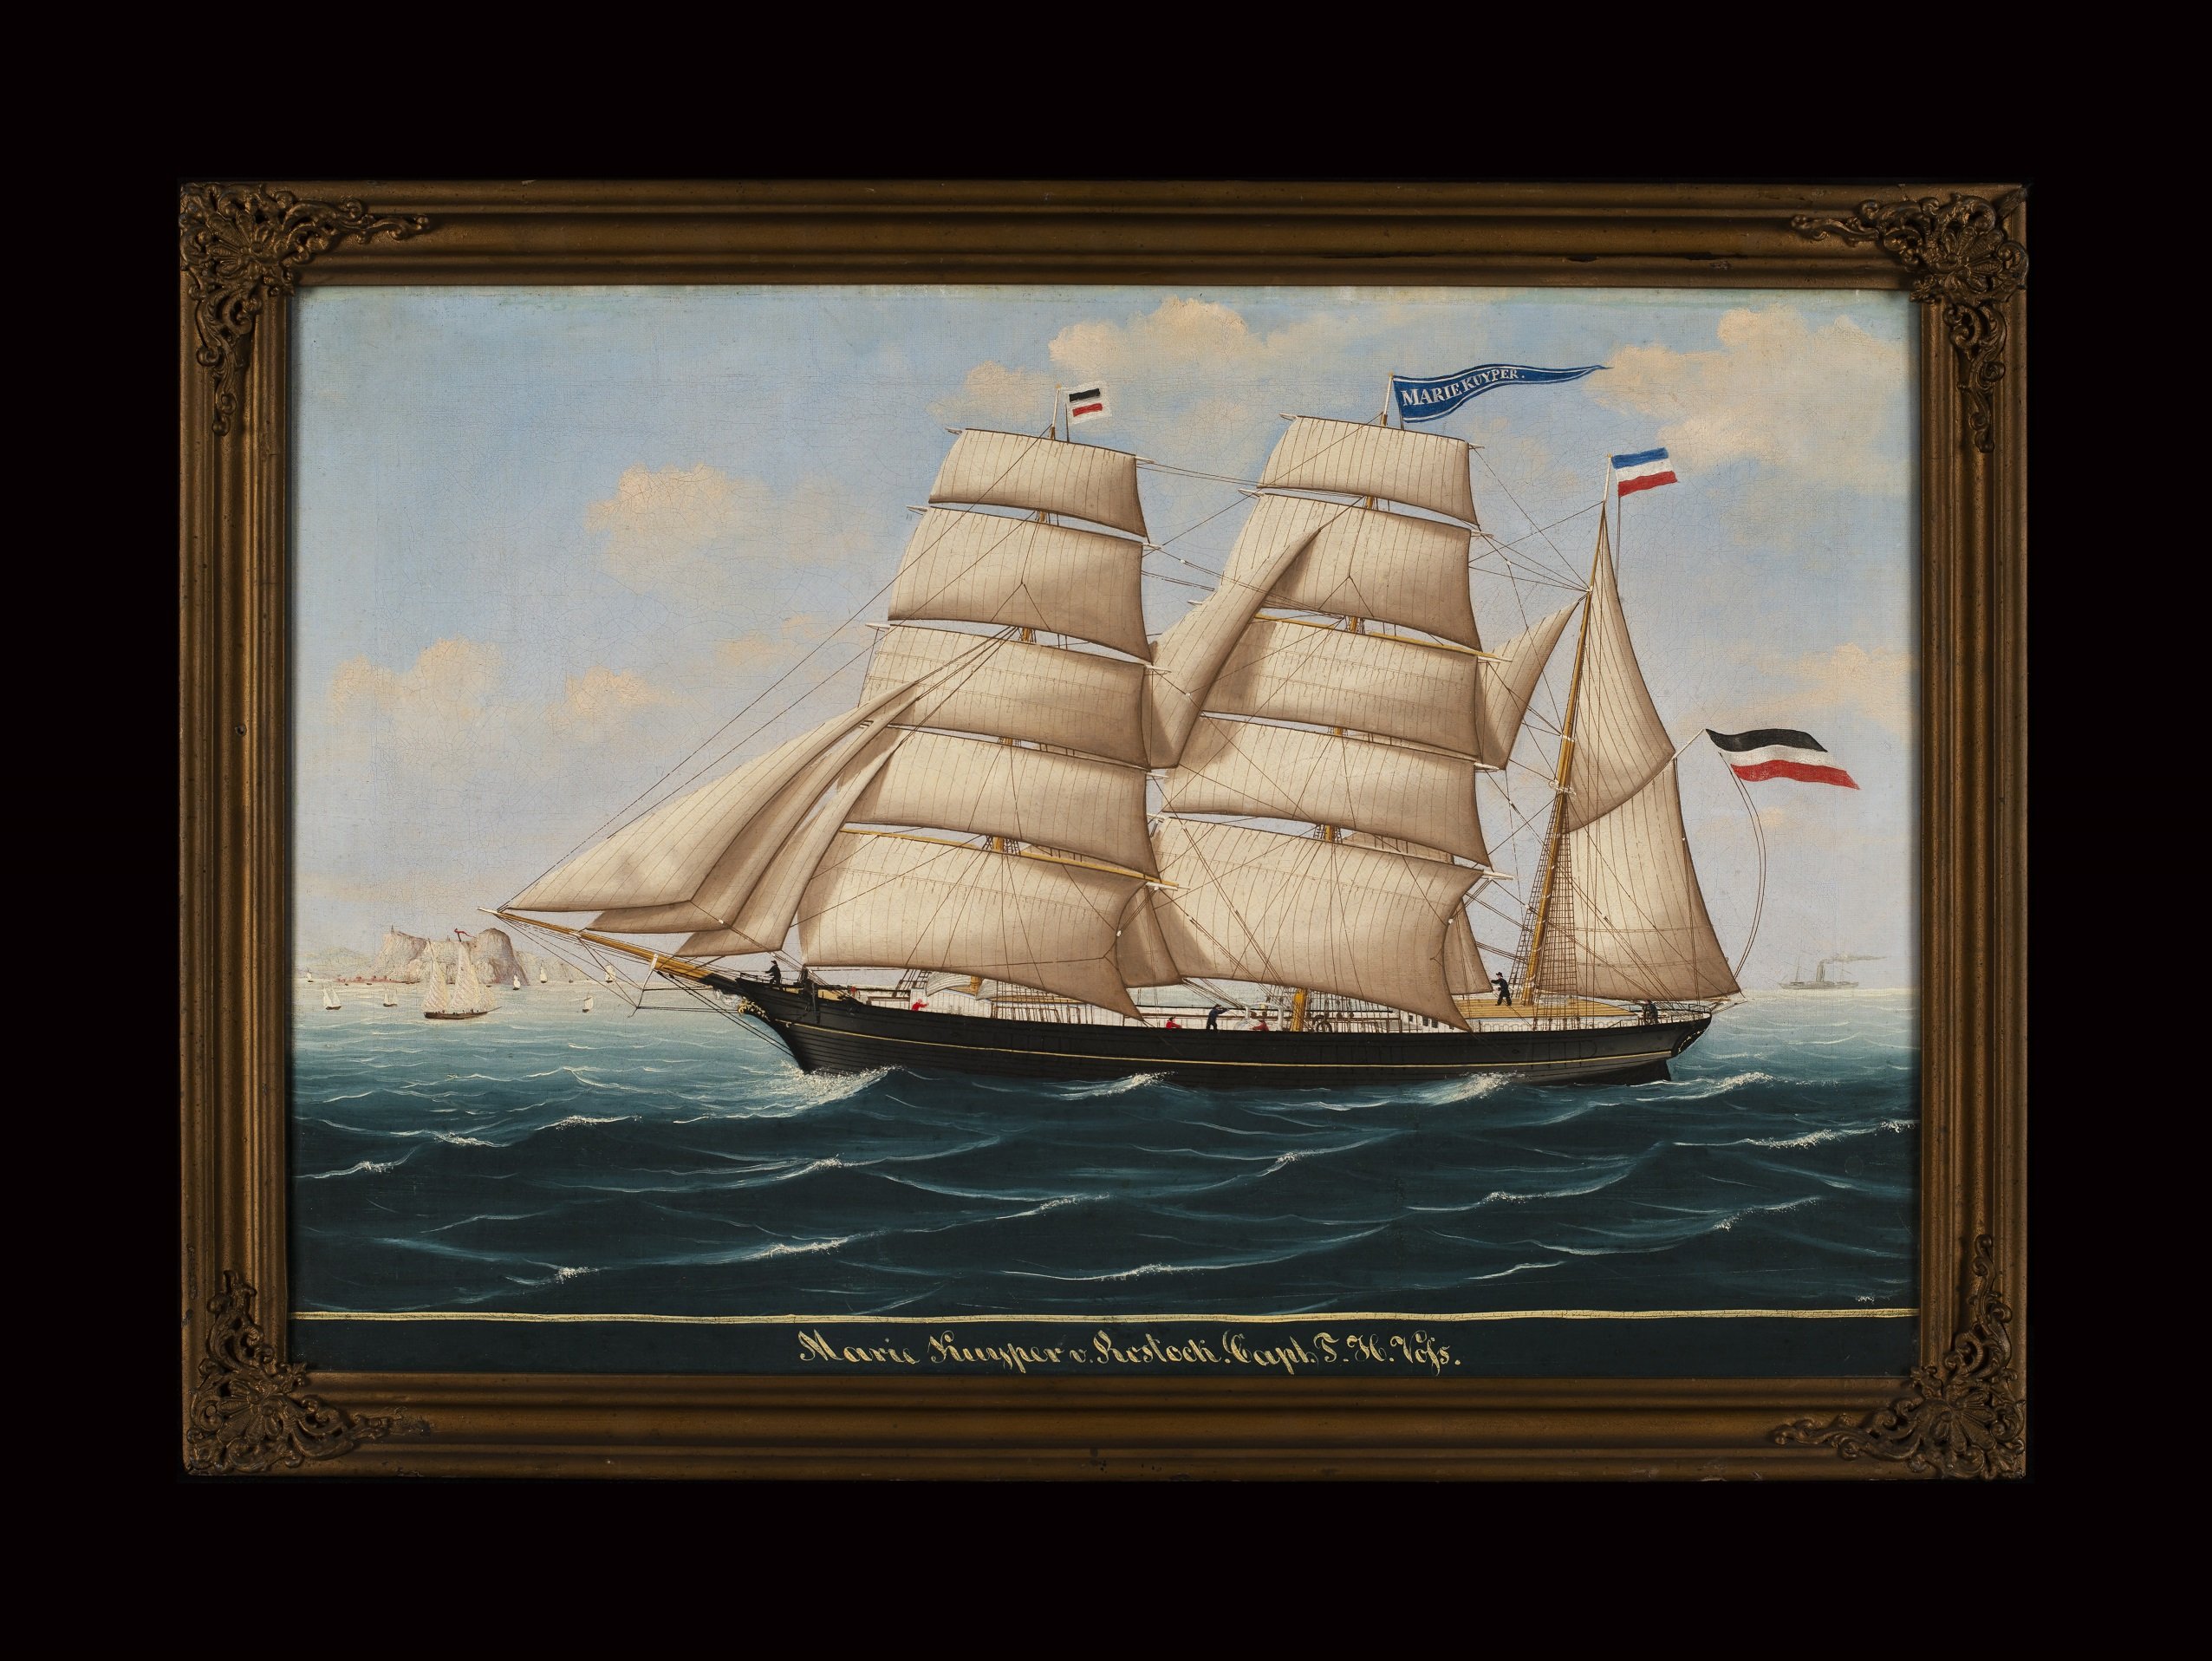 Bark MARIE KUYPER (Schiffbau- und Schiffahrtsmuseum Rostock RR-F)